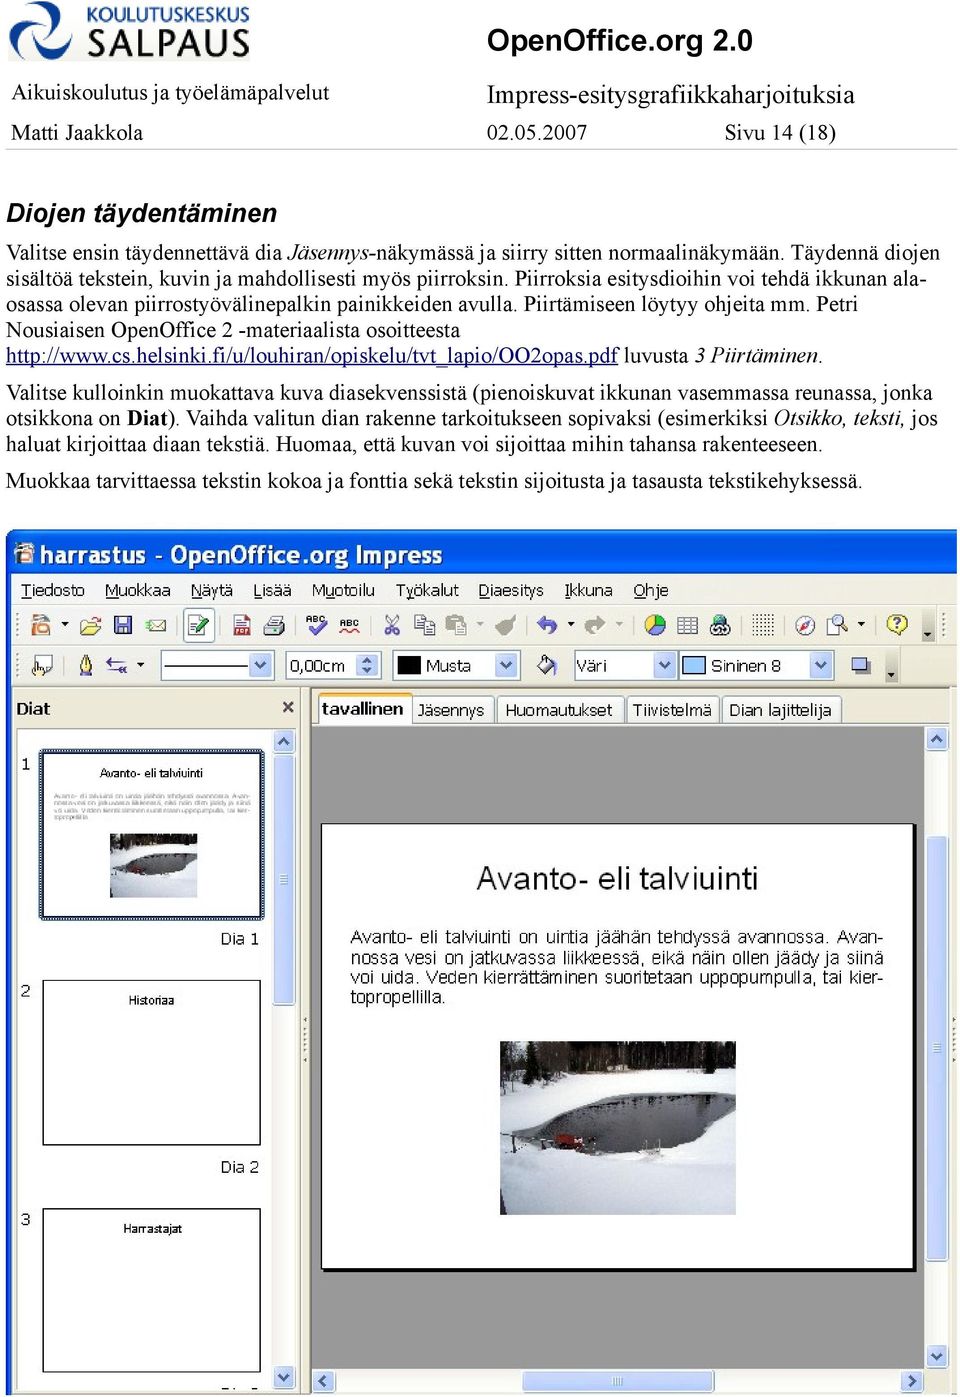 Piirtämiseen löytyy ohjeita mm. Petri Nousiaisen OpenOffice 2 -materiaalista osoitteesta http://www.cs.helsinki.fi/u/louhiran/opiskelu/tvt_lapio/oo2opas.pdf luvusta 3 Piirtäminen.